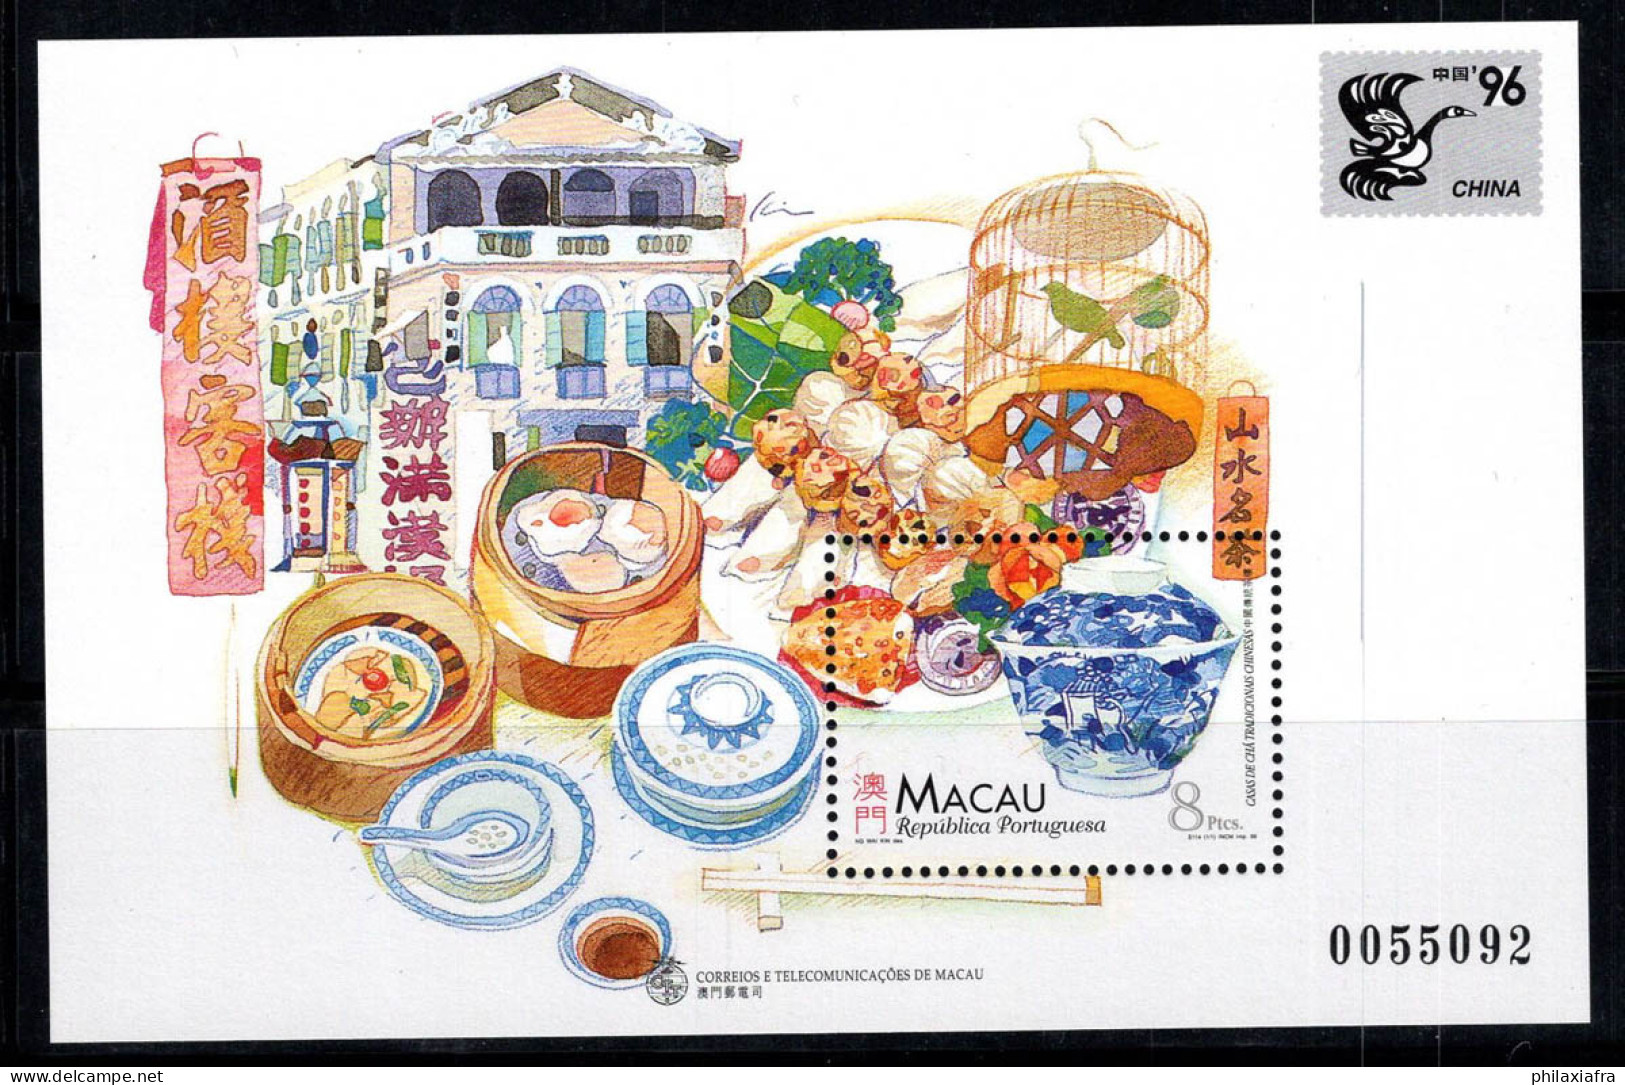 Macao 1996 Mi. Bl. 37 Bloc Feuillet 100% Neuf ** Chine, Exposition Philatélique - Blocks & Sheetlets